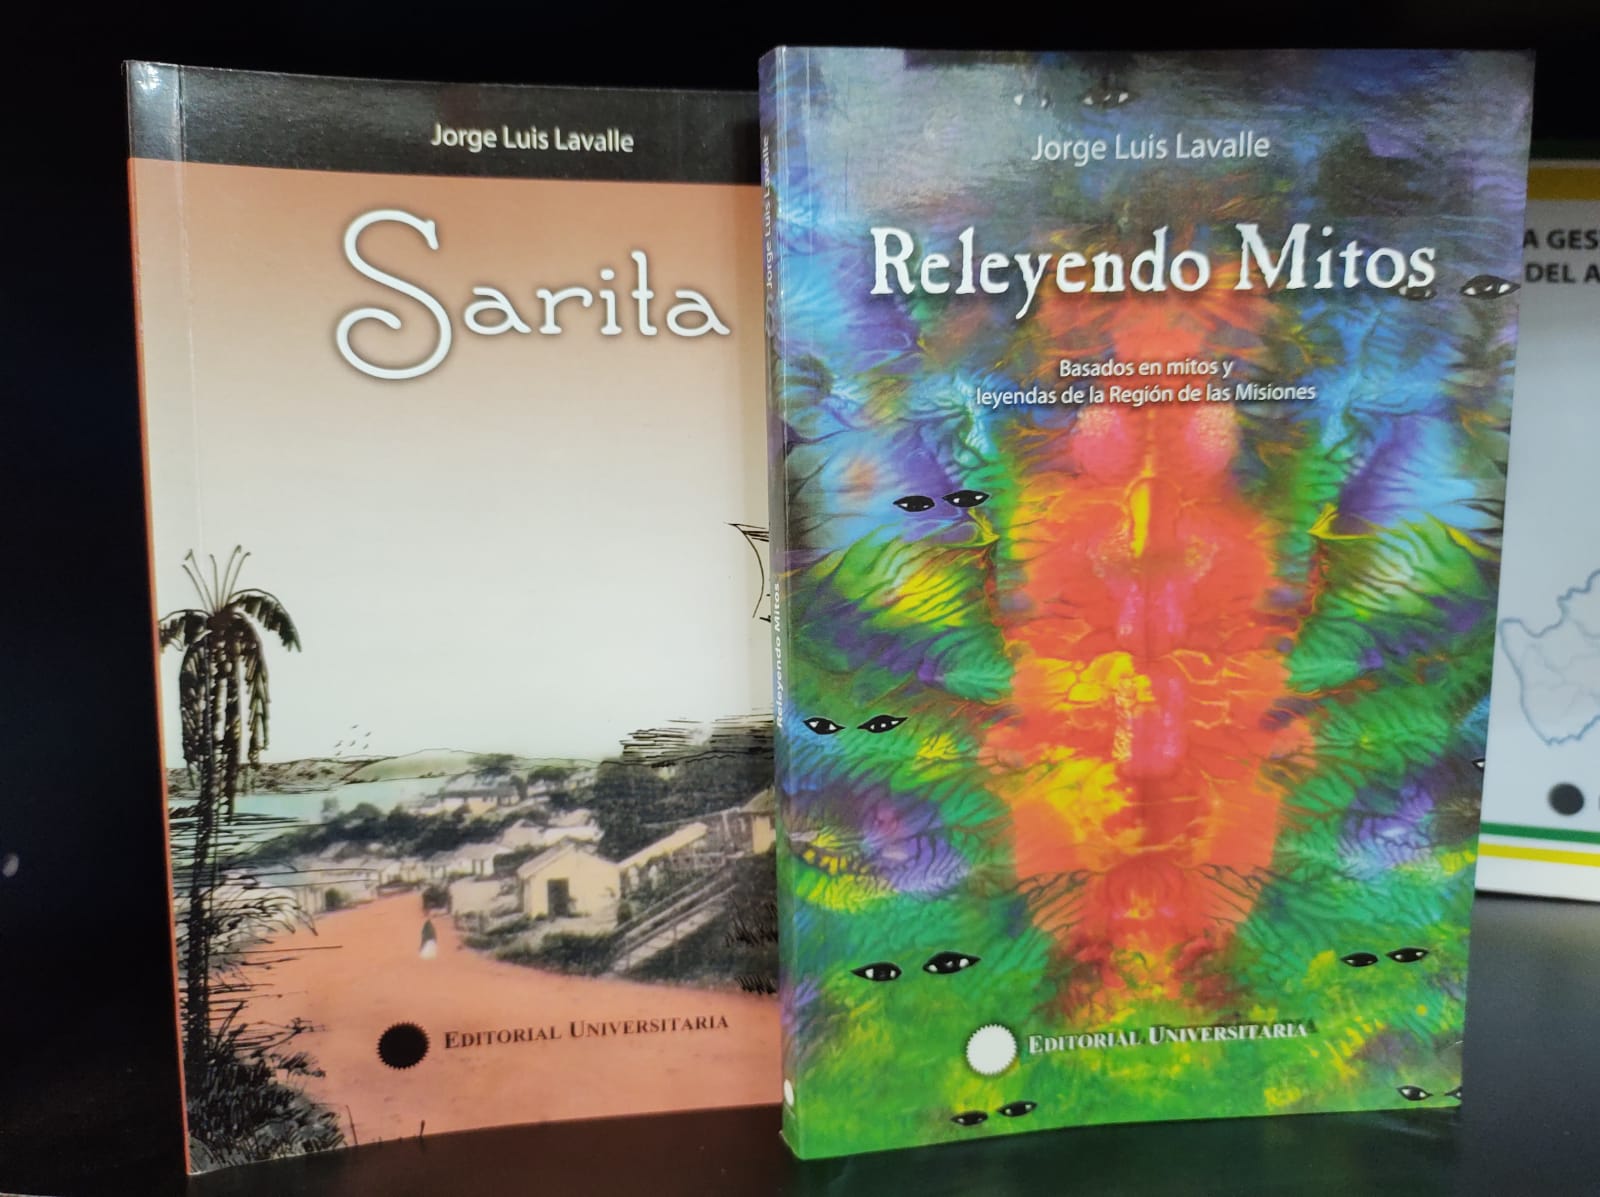 Los libros Releyendo mitos y Sarita en kioscos de diarios y revistas